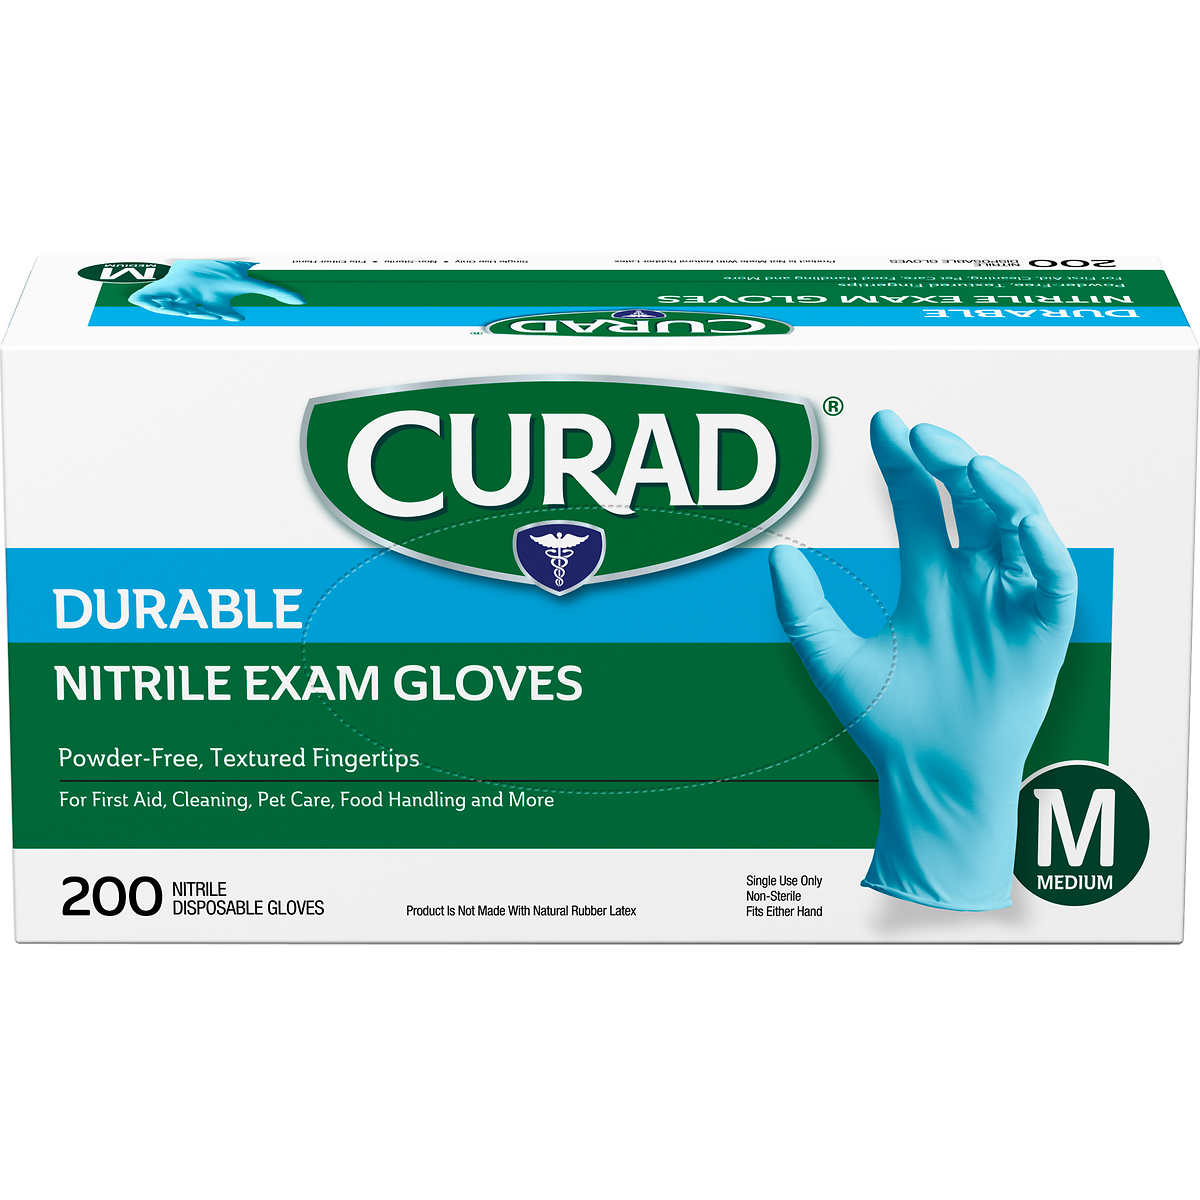 Curad Durable Nitrile Exam Gloves Medium 600 Count 